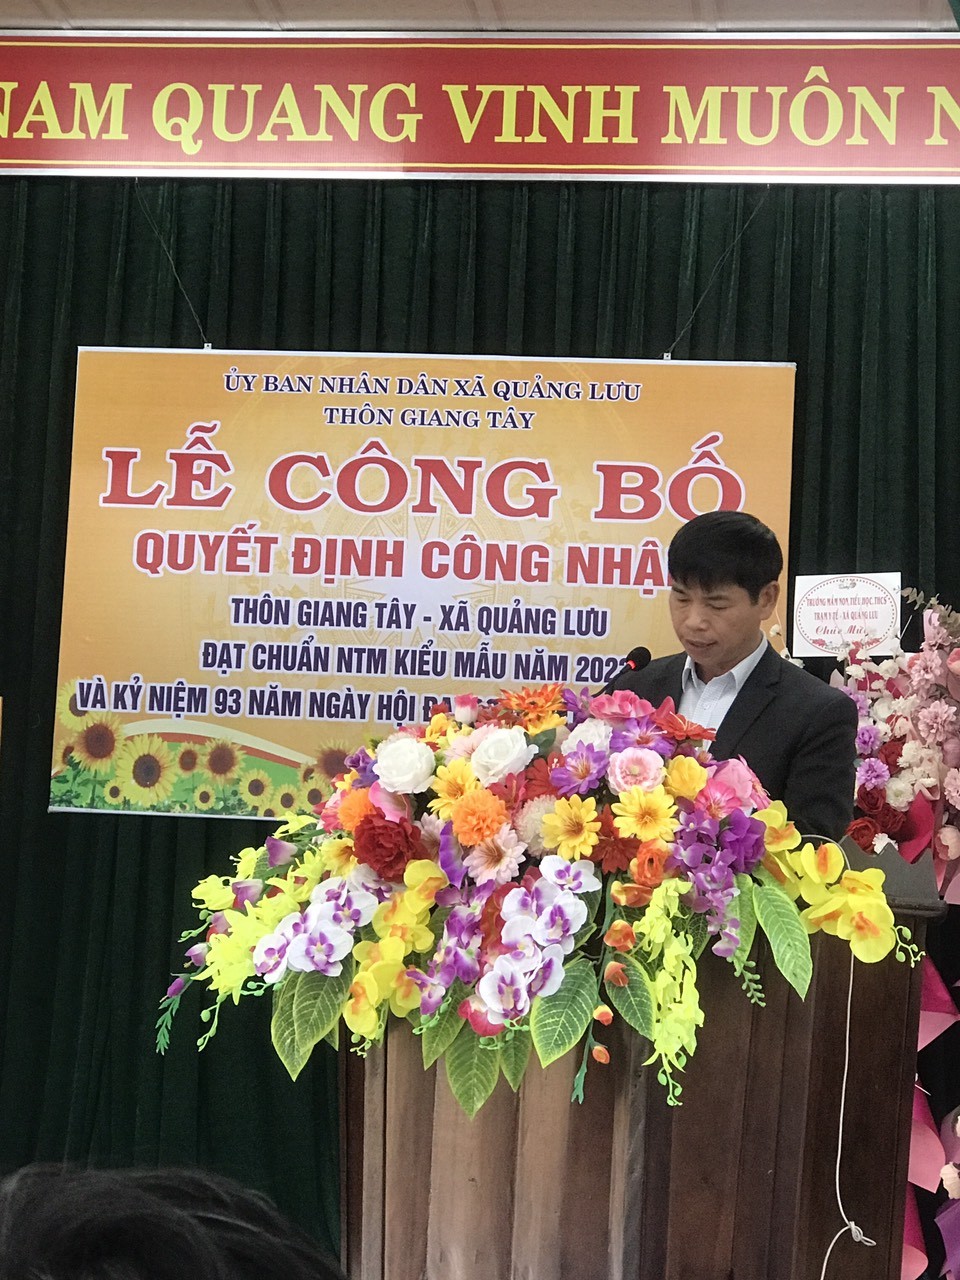 Thôn Giang Tây, xã Quảng Lưu tổ chức lễ công bố Quyết định công nhận thôn đạt chuẩn Nông thôn mới kiểu mẫu năm 2023 và kỳ niệm 93 năm ngày hội đại đoàn kết toàn dân tộc